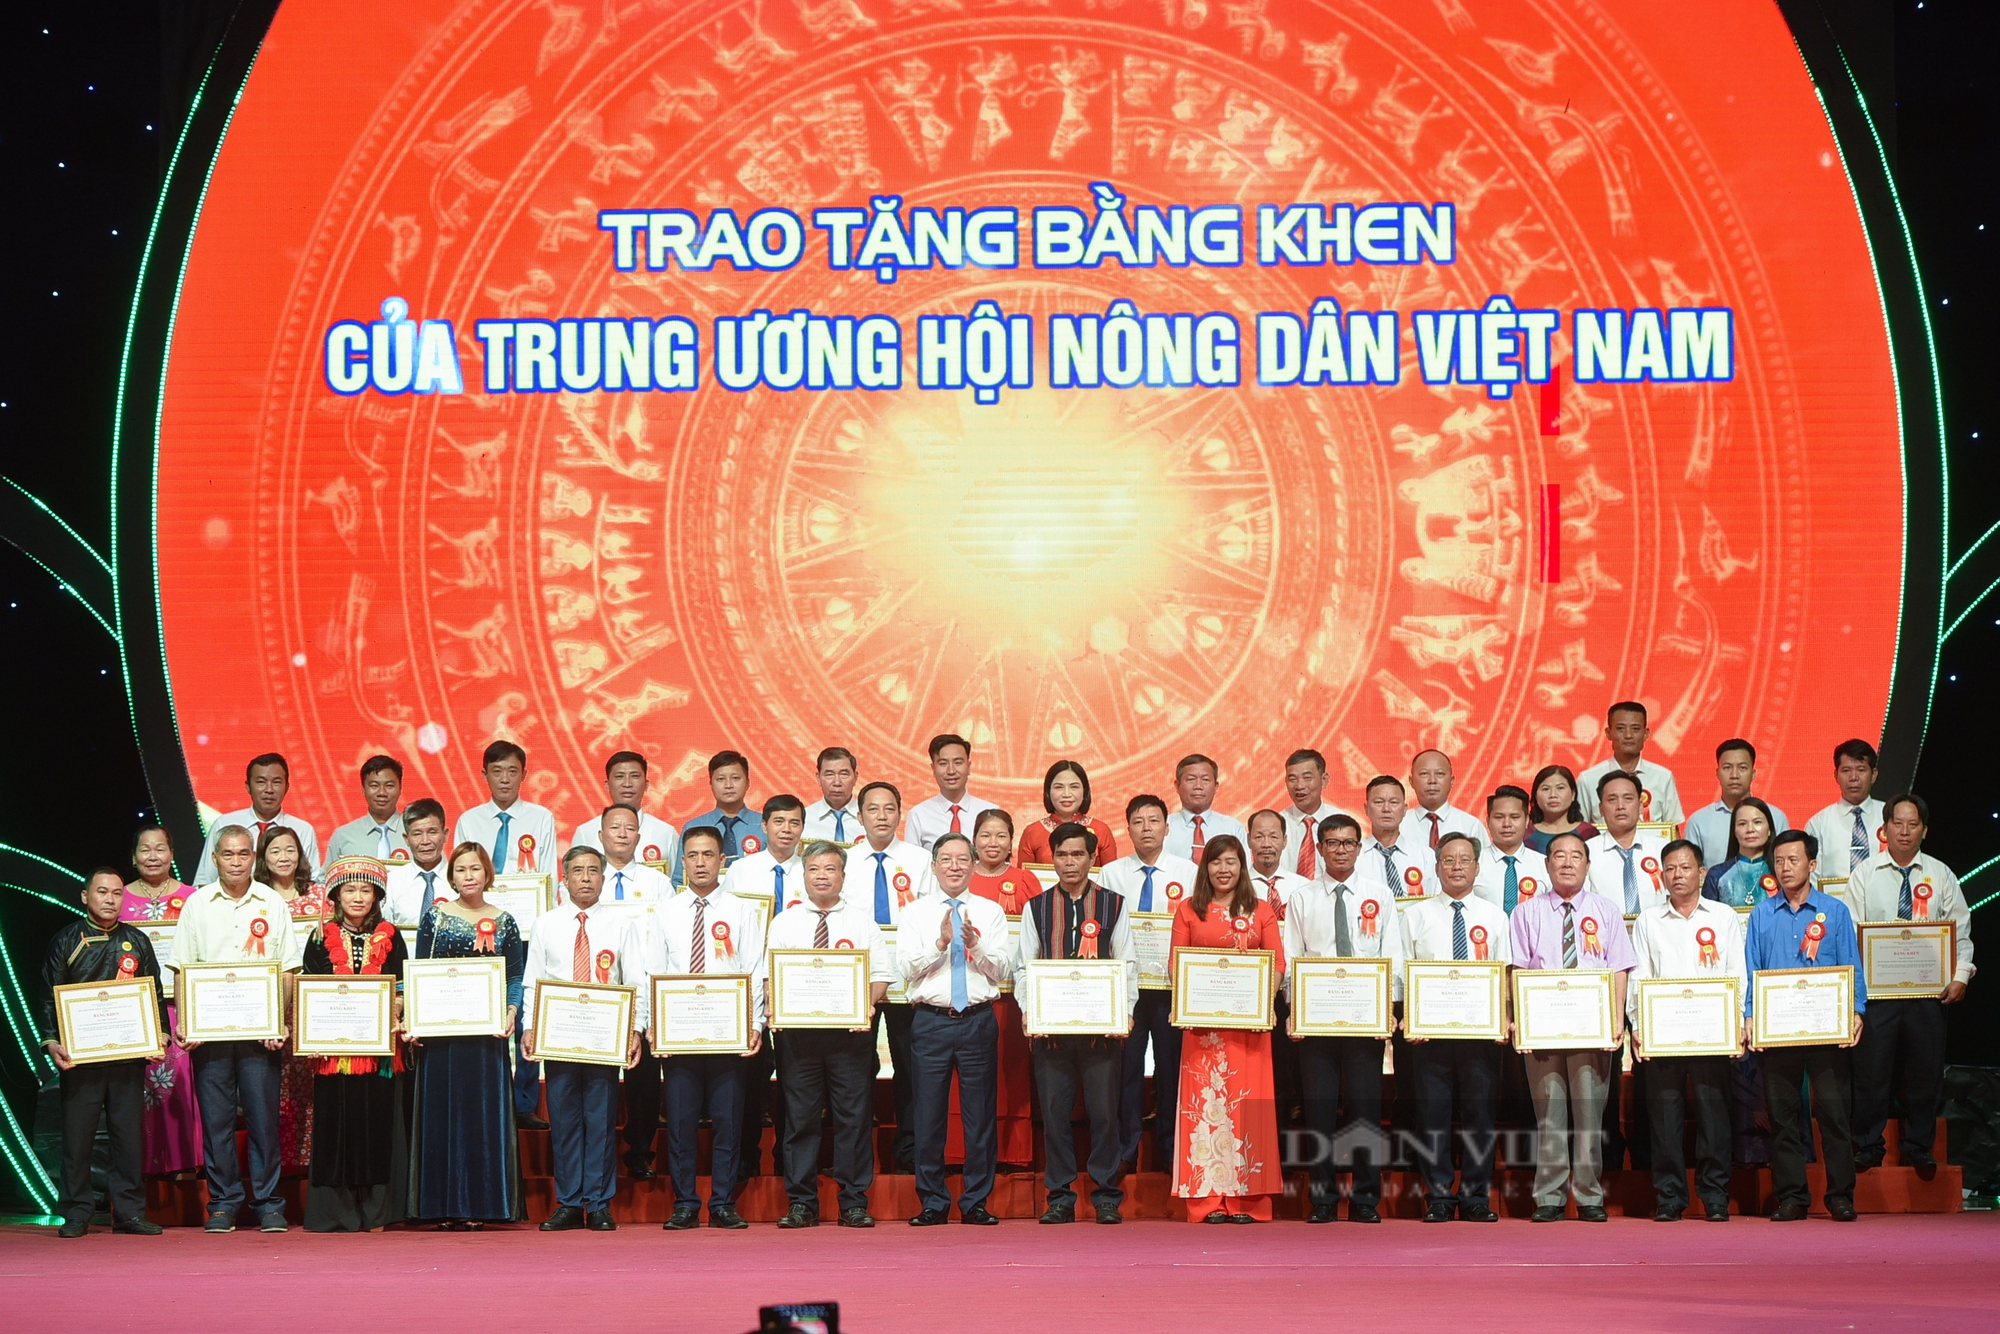 Gần 300 nông dân được tặng bằng khen của Trung ương Hội nông dân Việt Nam - Ảnh 12.